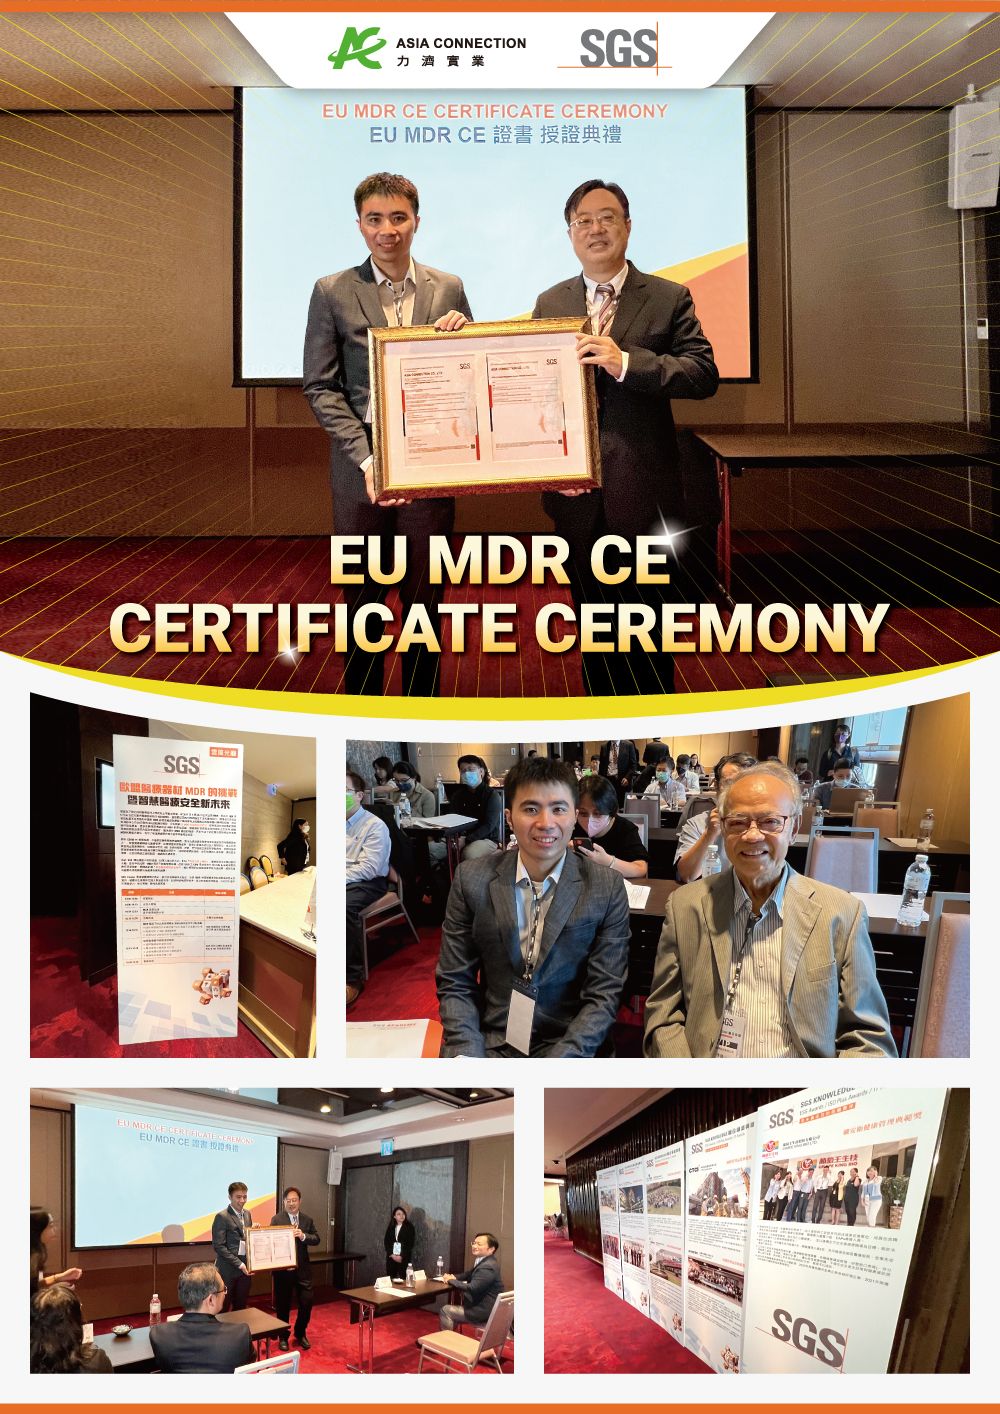 Il Nasal Aspirator alimentato ME8202X di 'Asia Connection' ottiene la certificazione CE ai sensi del Regolamento sui Dispositivi Medici (MDR) UE 2017/745